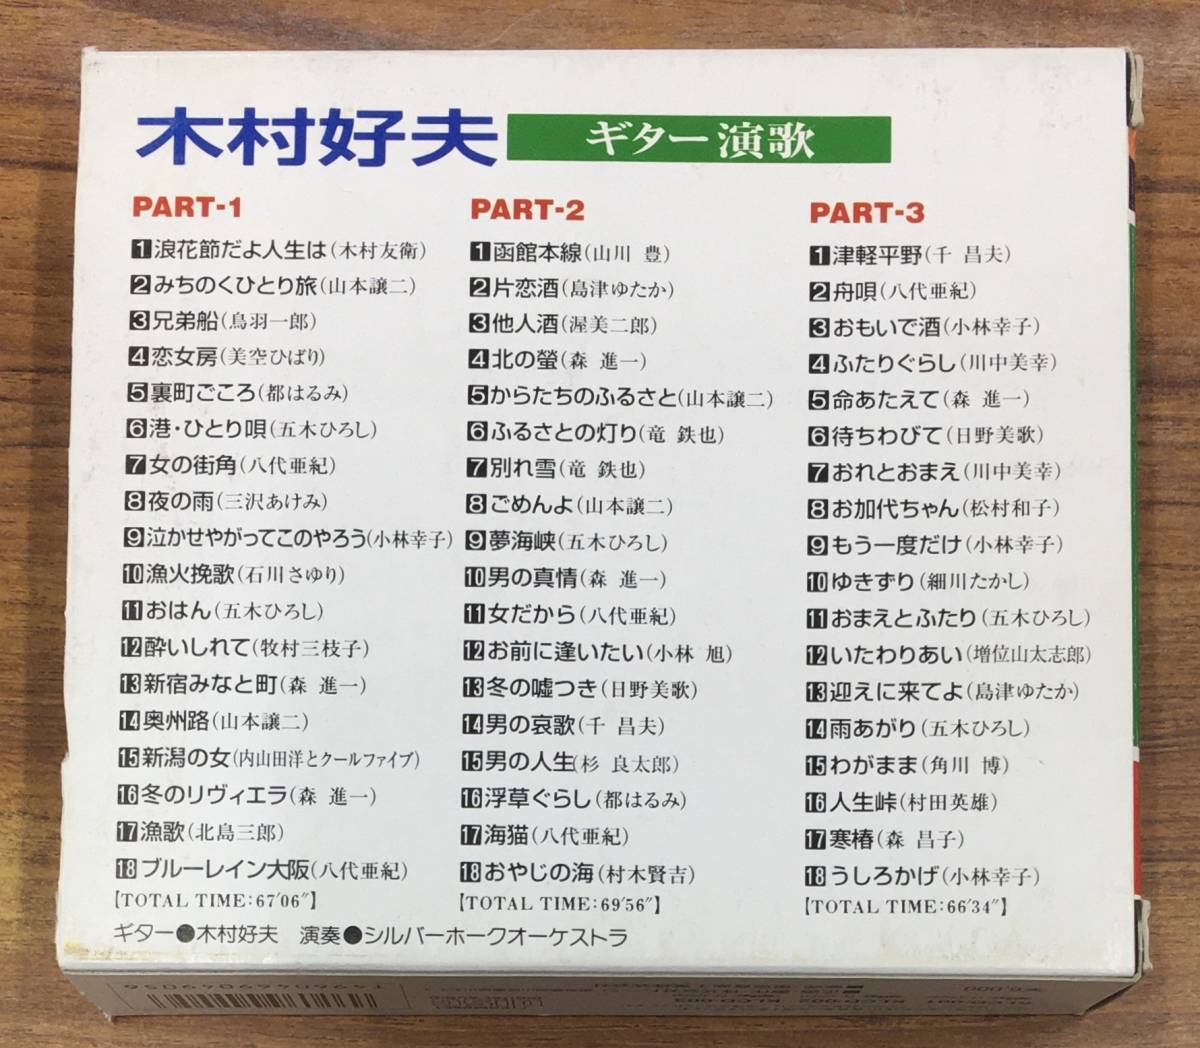 木村好夫 - ギター演歌 CD BOX 3枚組 KLCD-001/3 全54曲収録 …h-2328_画像2